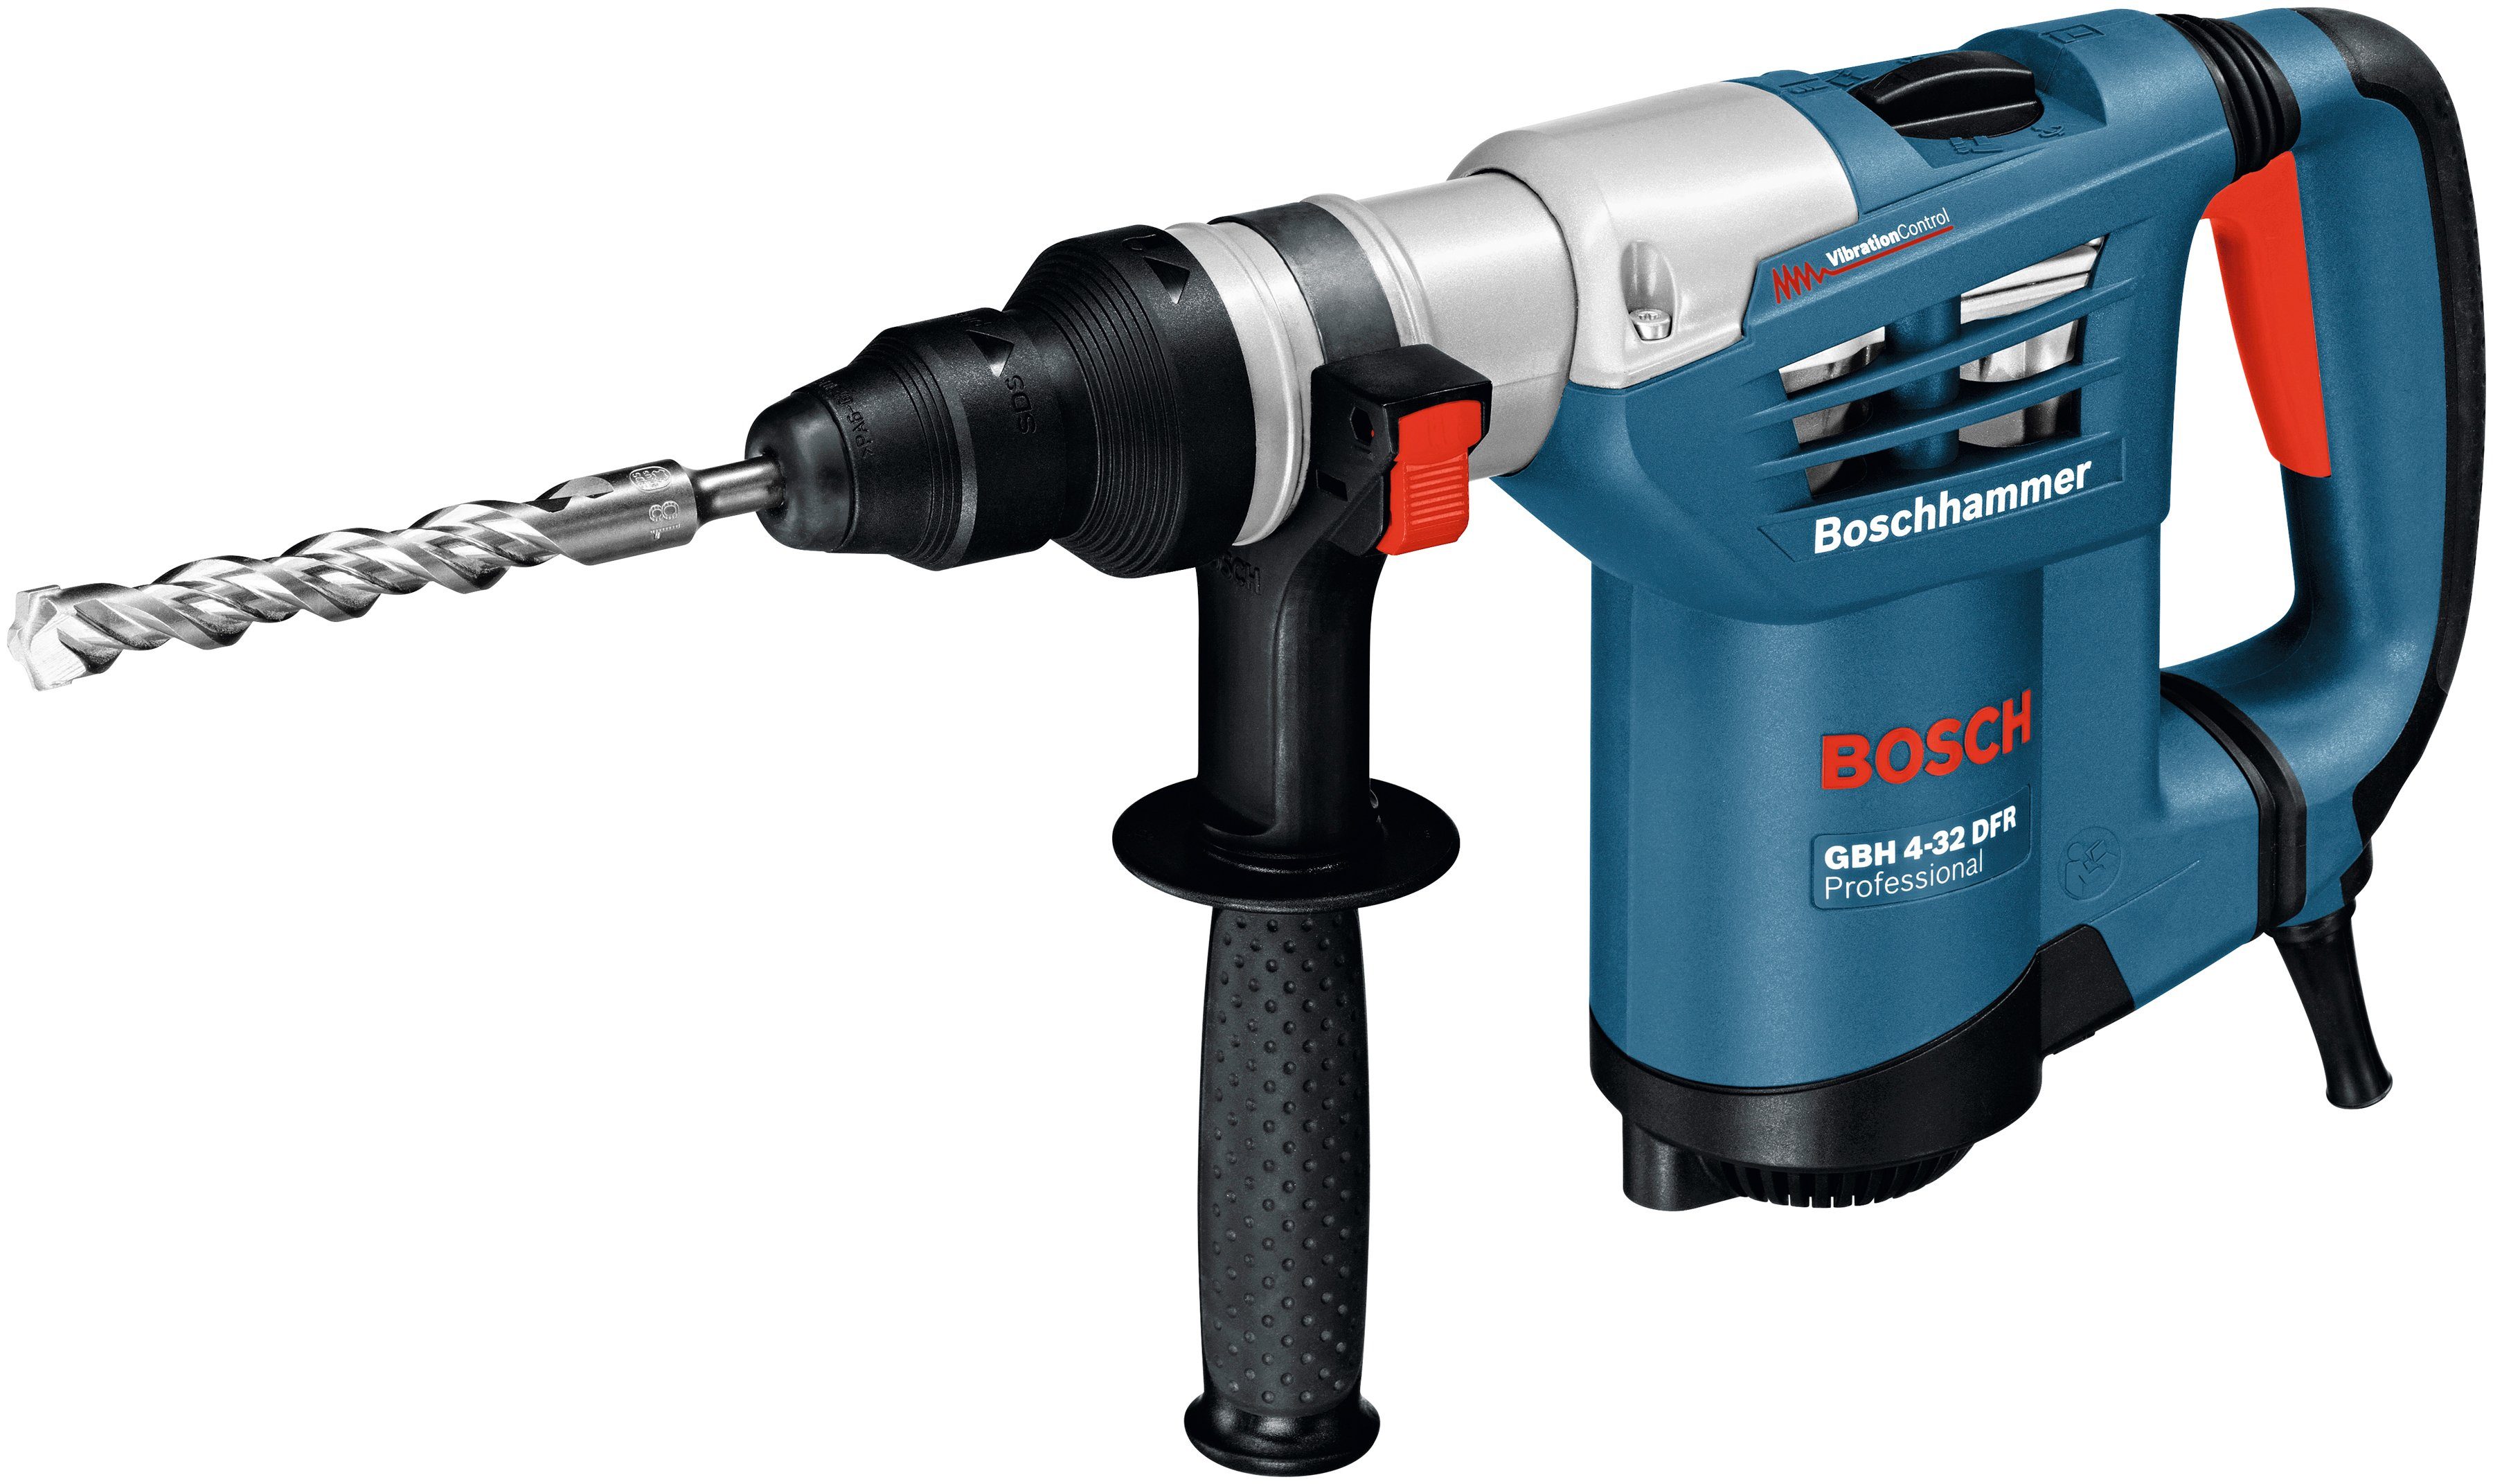 U/min, 4-32 3600 Bosch Handwerkkoffer max. DFR, GBH Bohrhammer Schnellspannbohrfutter, Professional mit